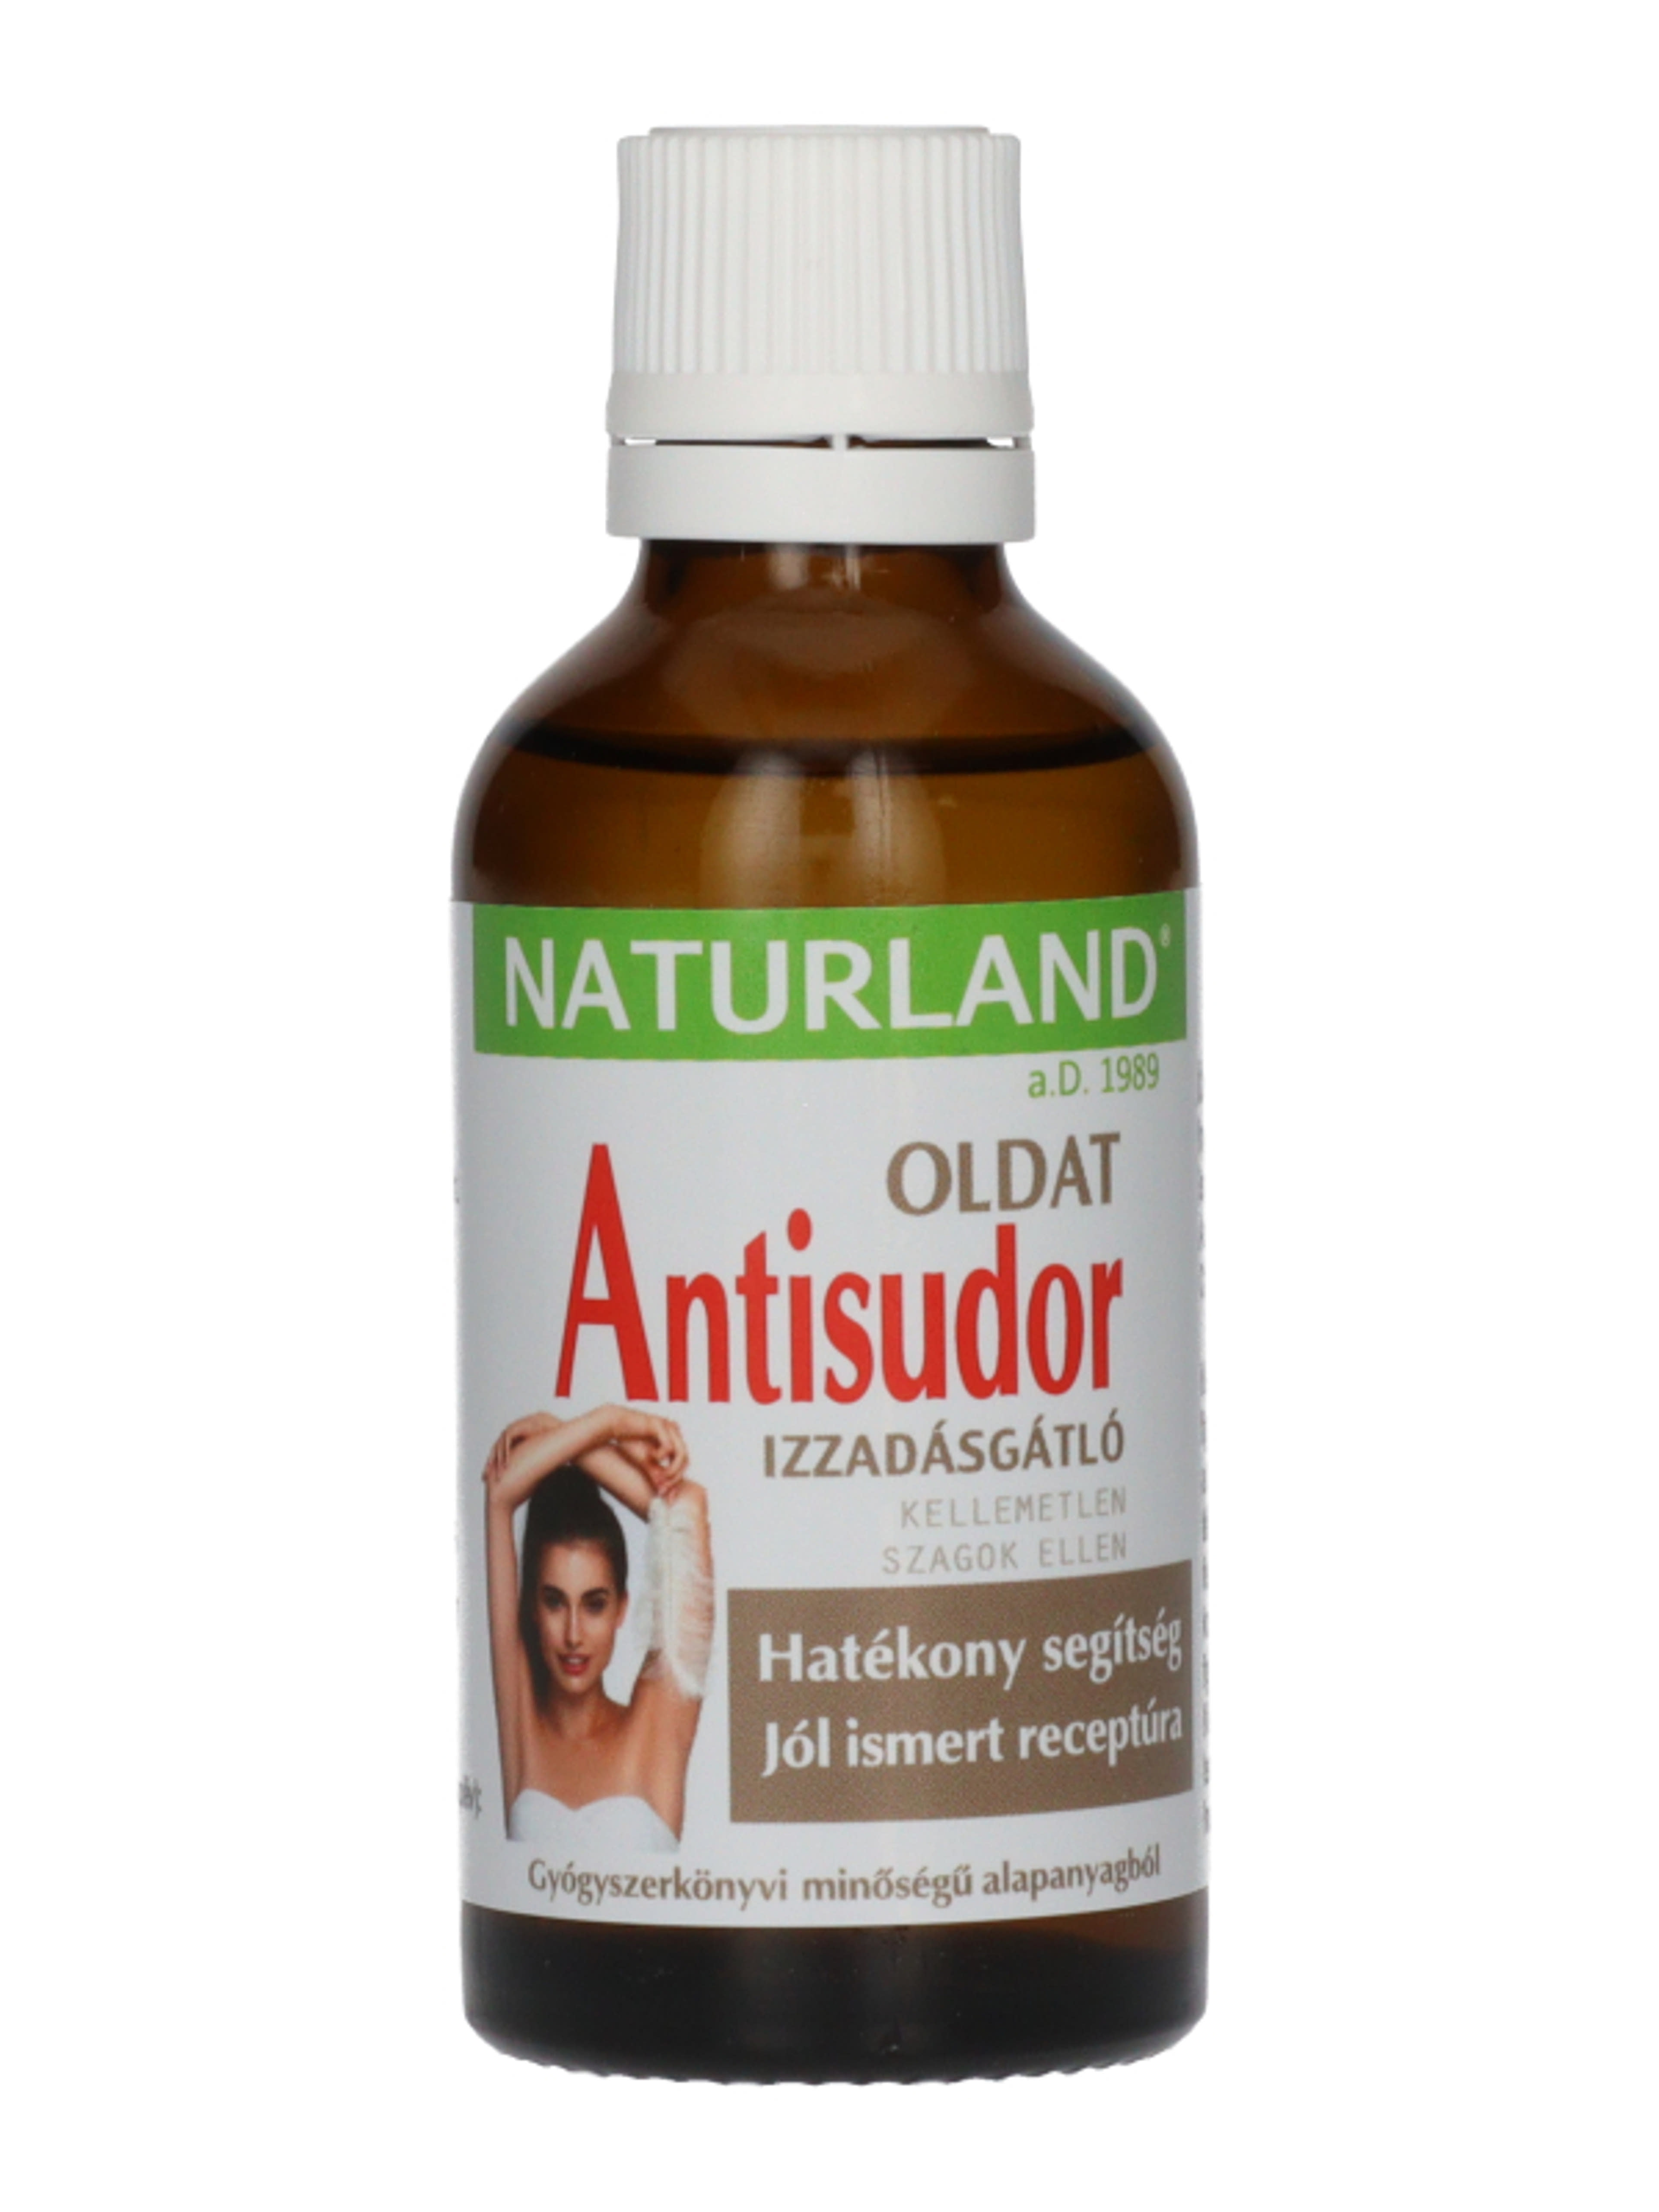 Naturland Antisudor izzadásgátló oldat - 50 ml-5